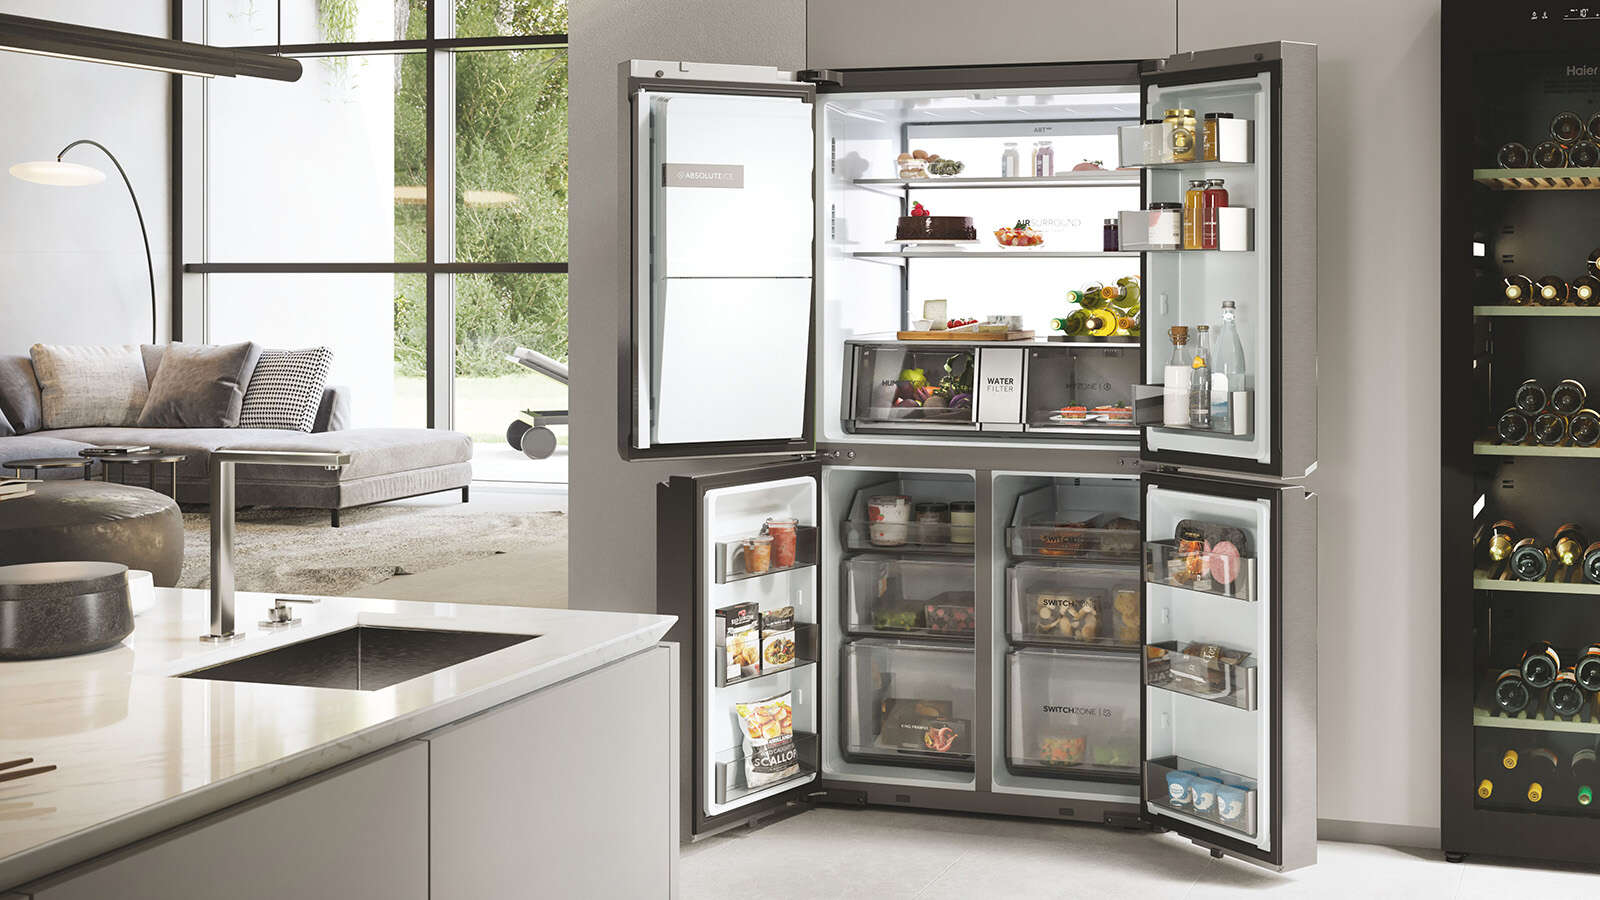 Réfrigérateur - Les critères de choix